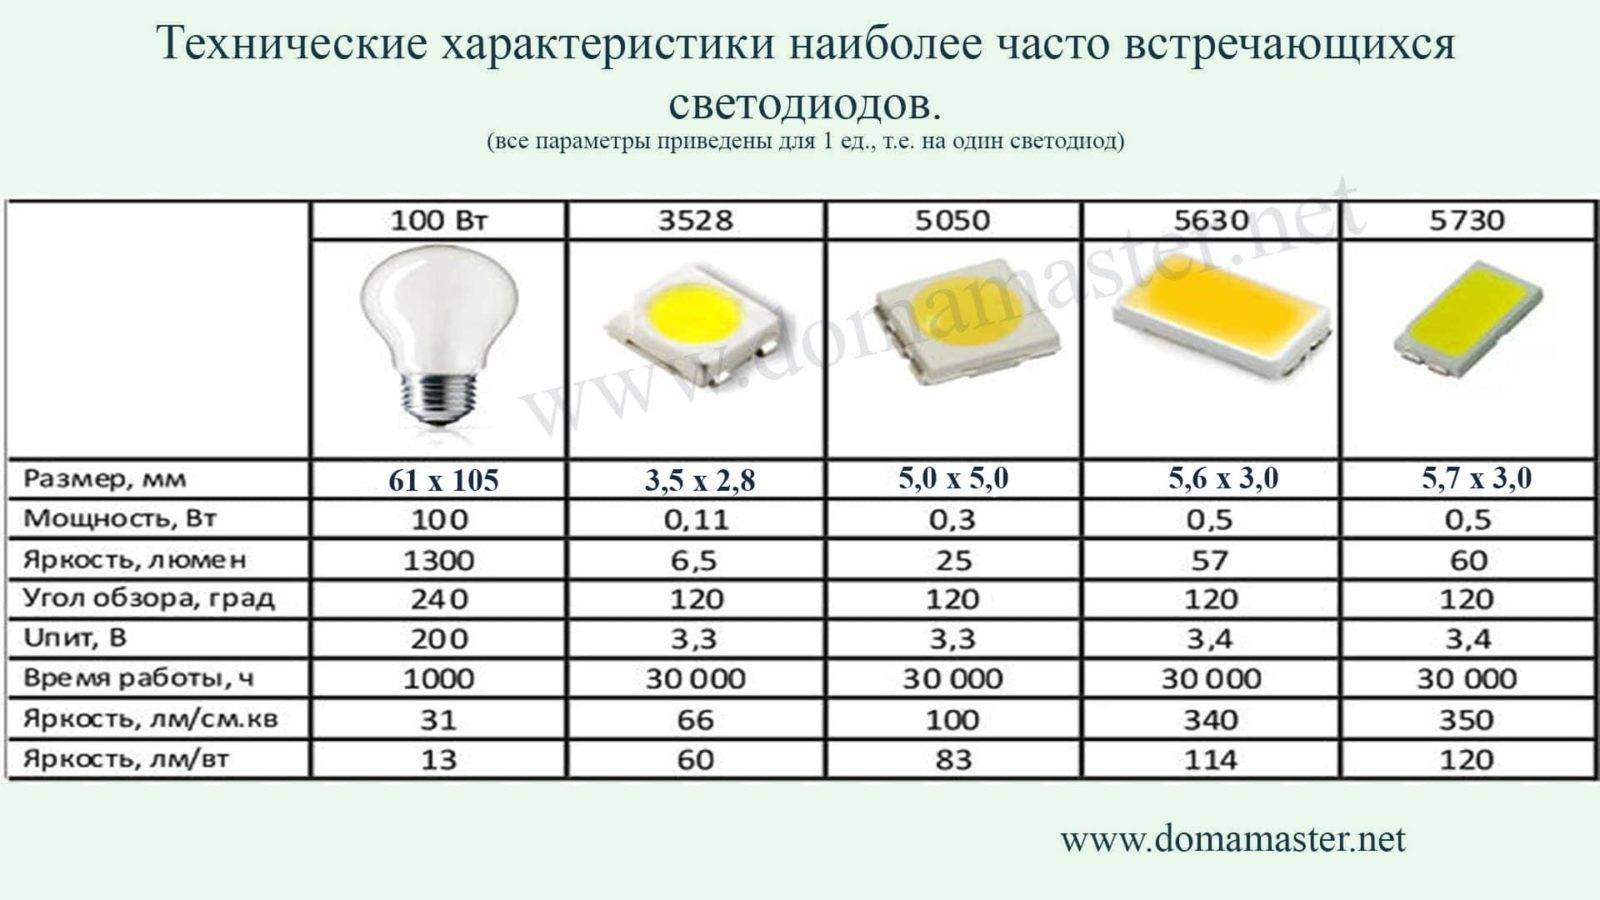 Cветодиодные лампы 5730 smd